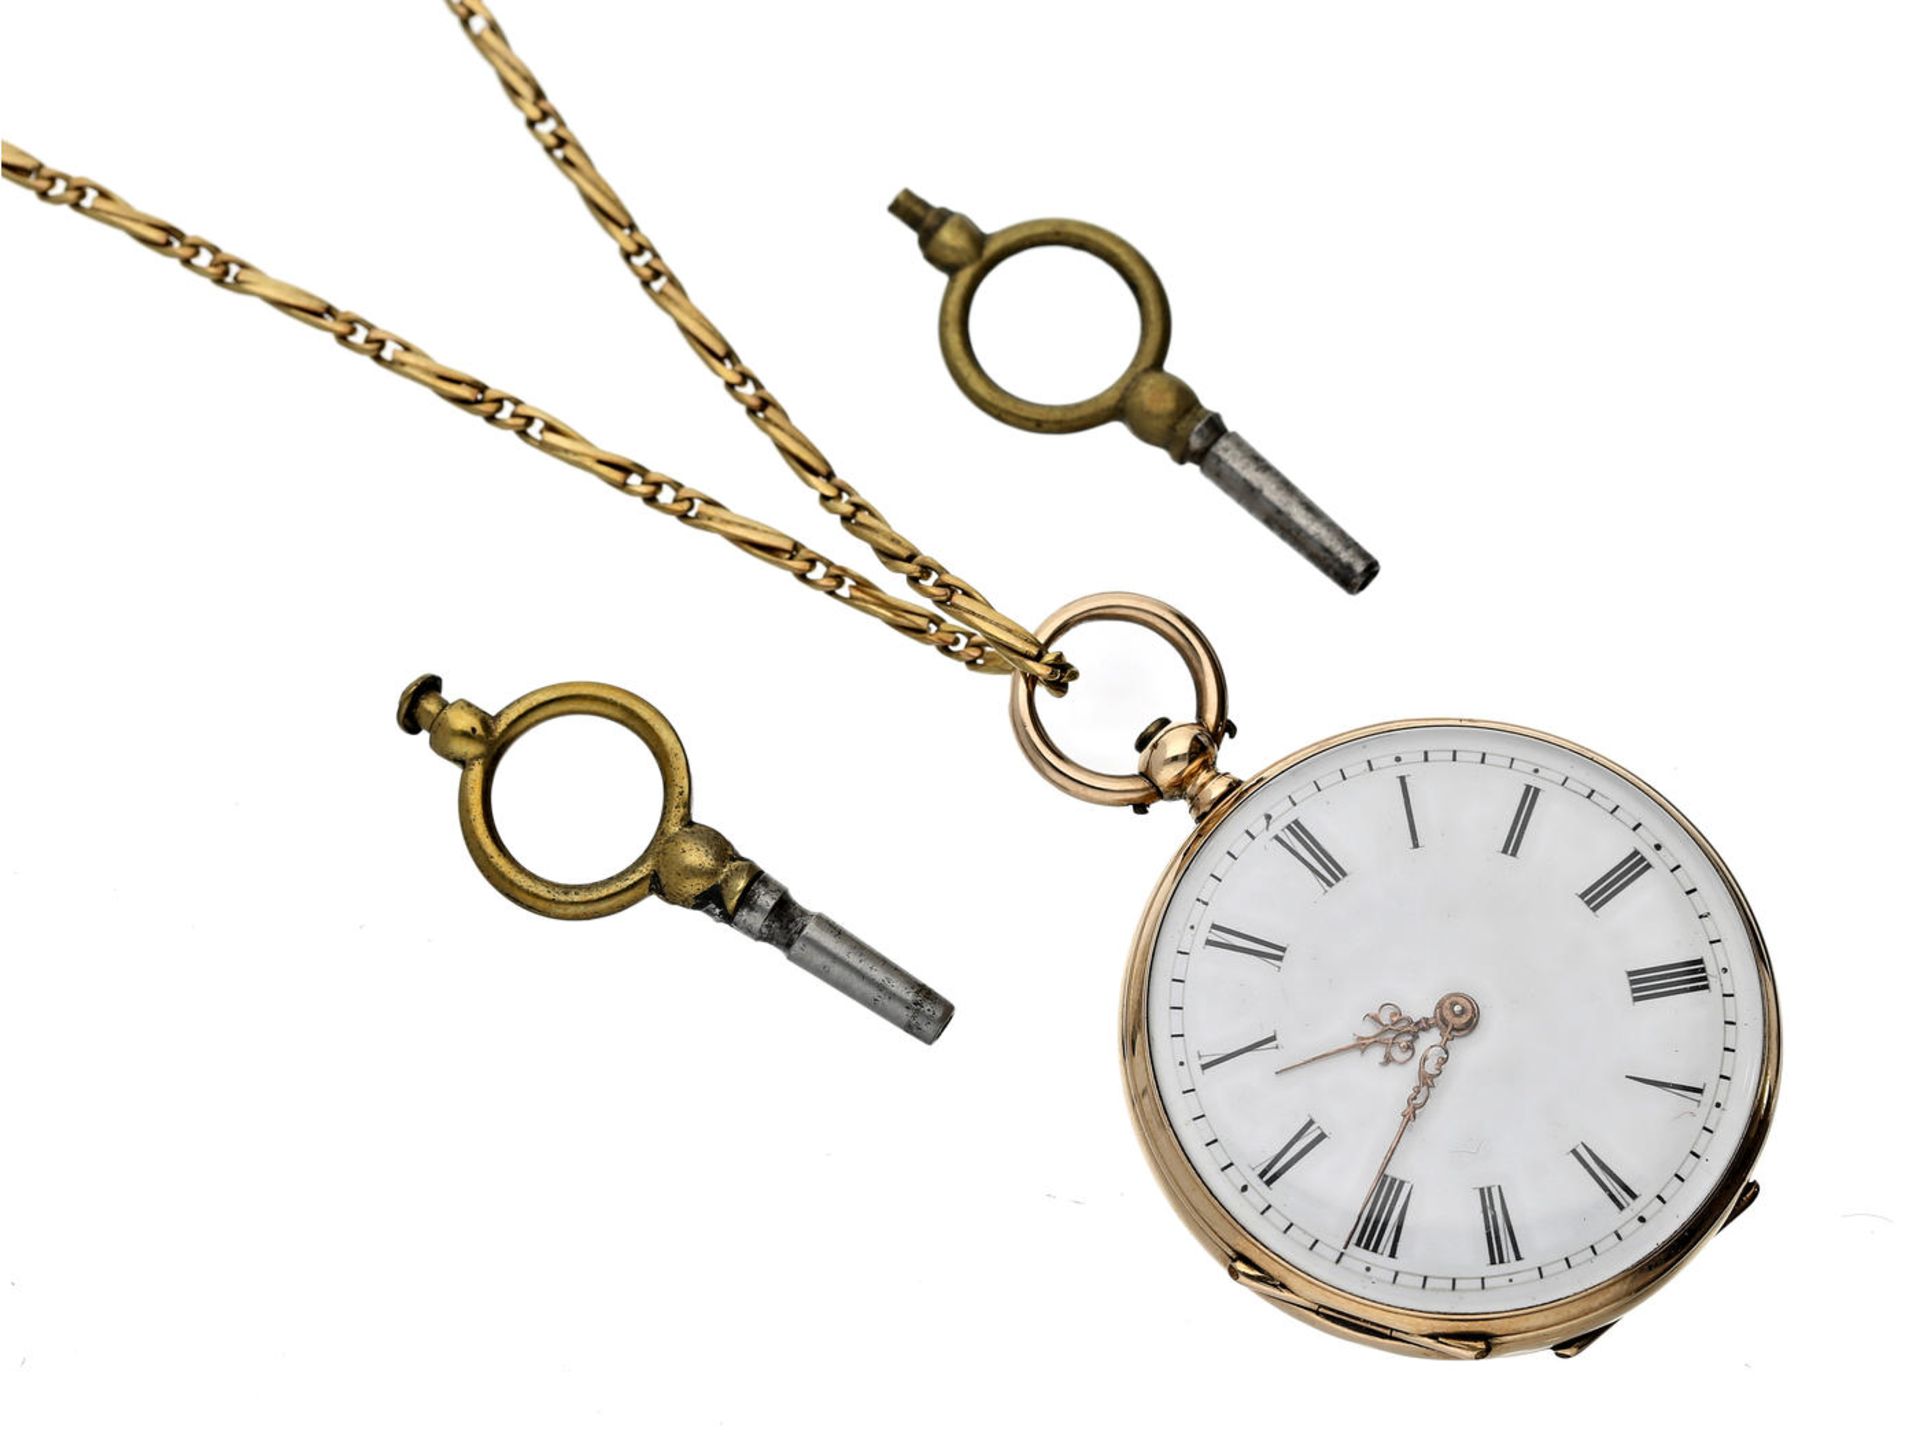 Taschenuhr/Anhängeuhr: feine Damenuhr mit dazugehöriger goldener Uhrenkette, signiert J & C.B